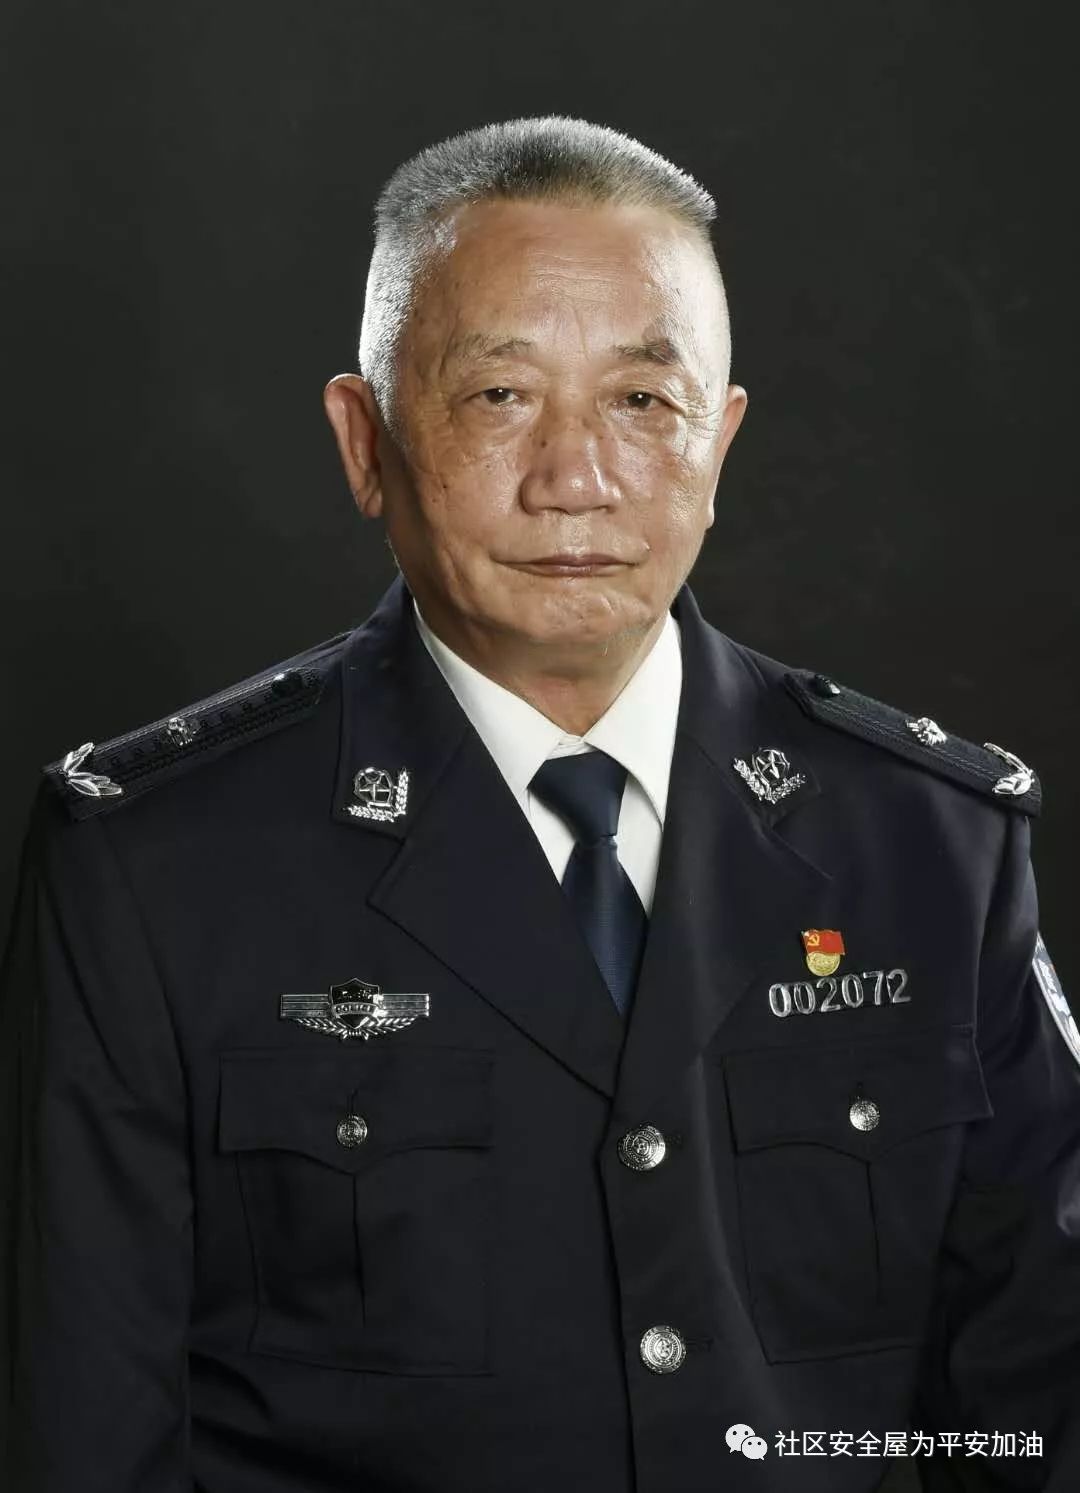 张 民芮明华,一级警督,曾任市局治安总队巡逻指导处副处长,处长,治安